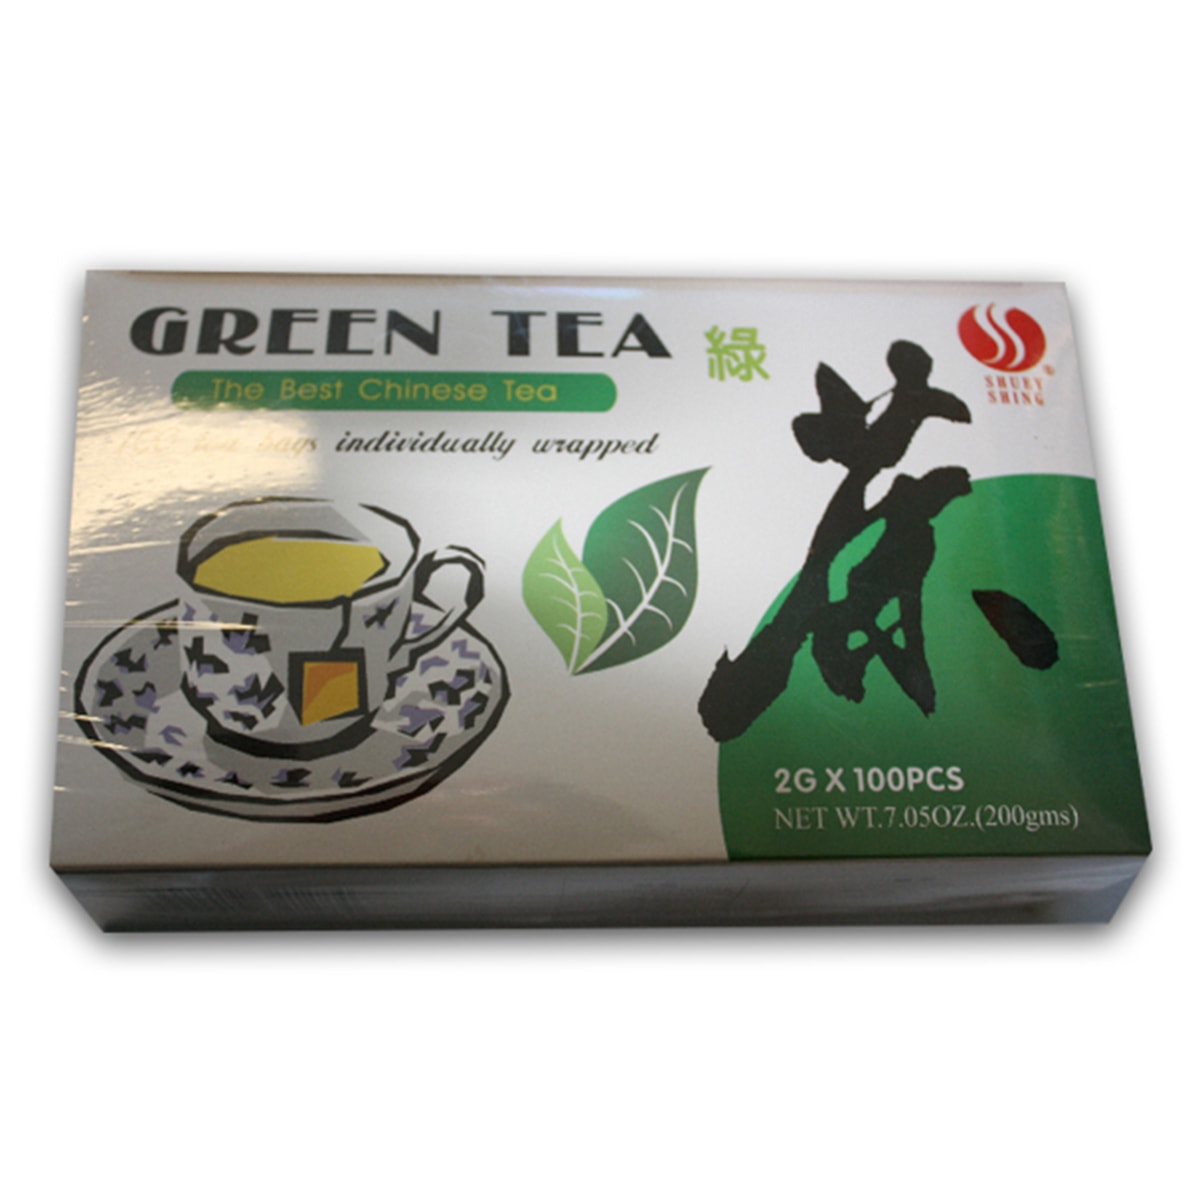 Buy Shuey Shing Green Tea (100 Teabags) - 200 gm